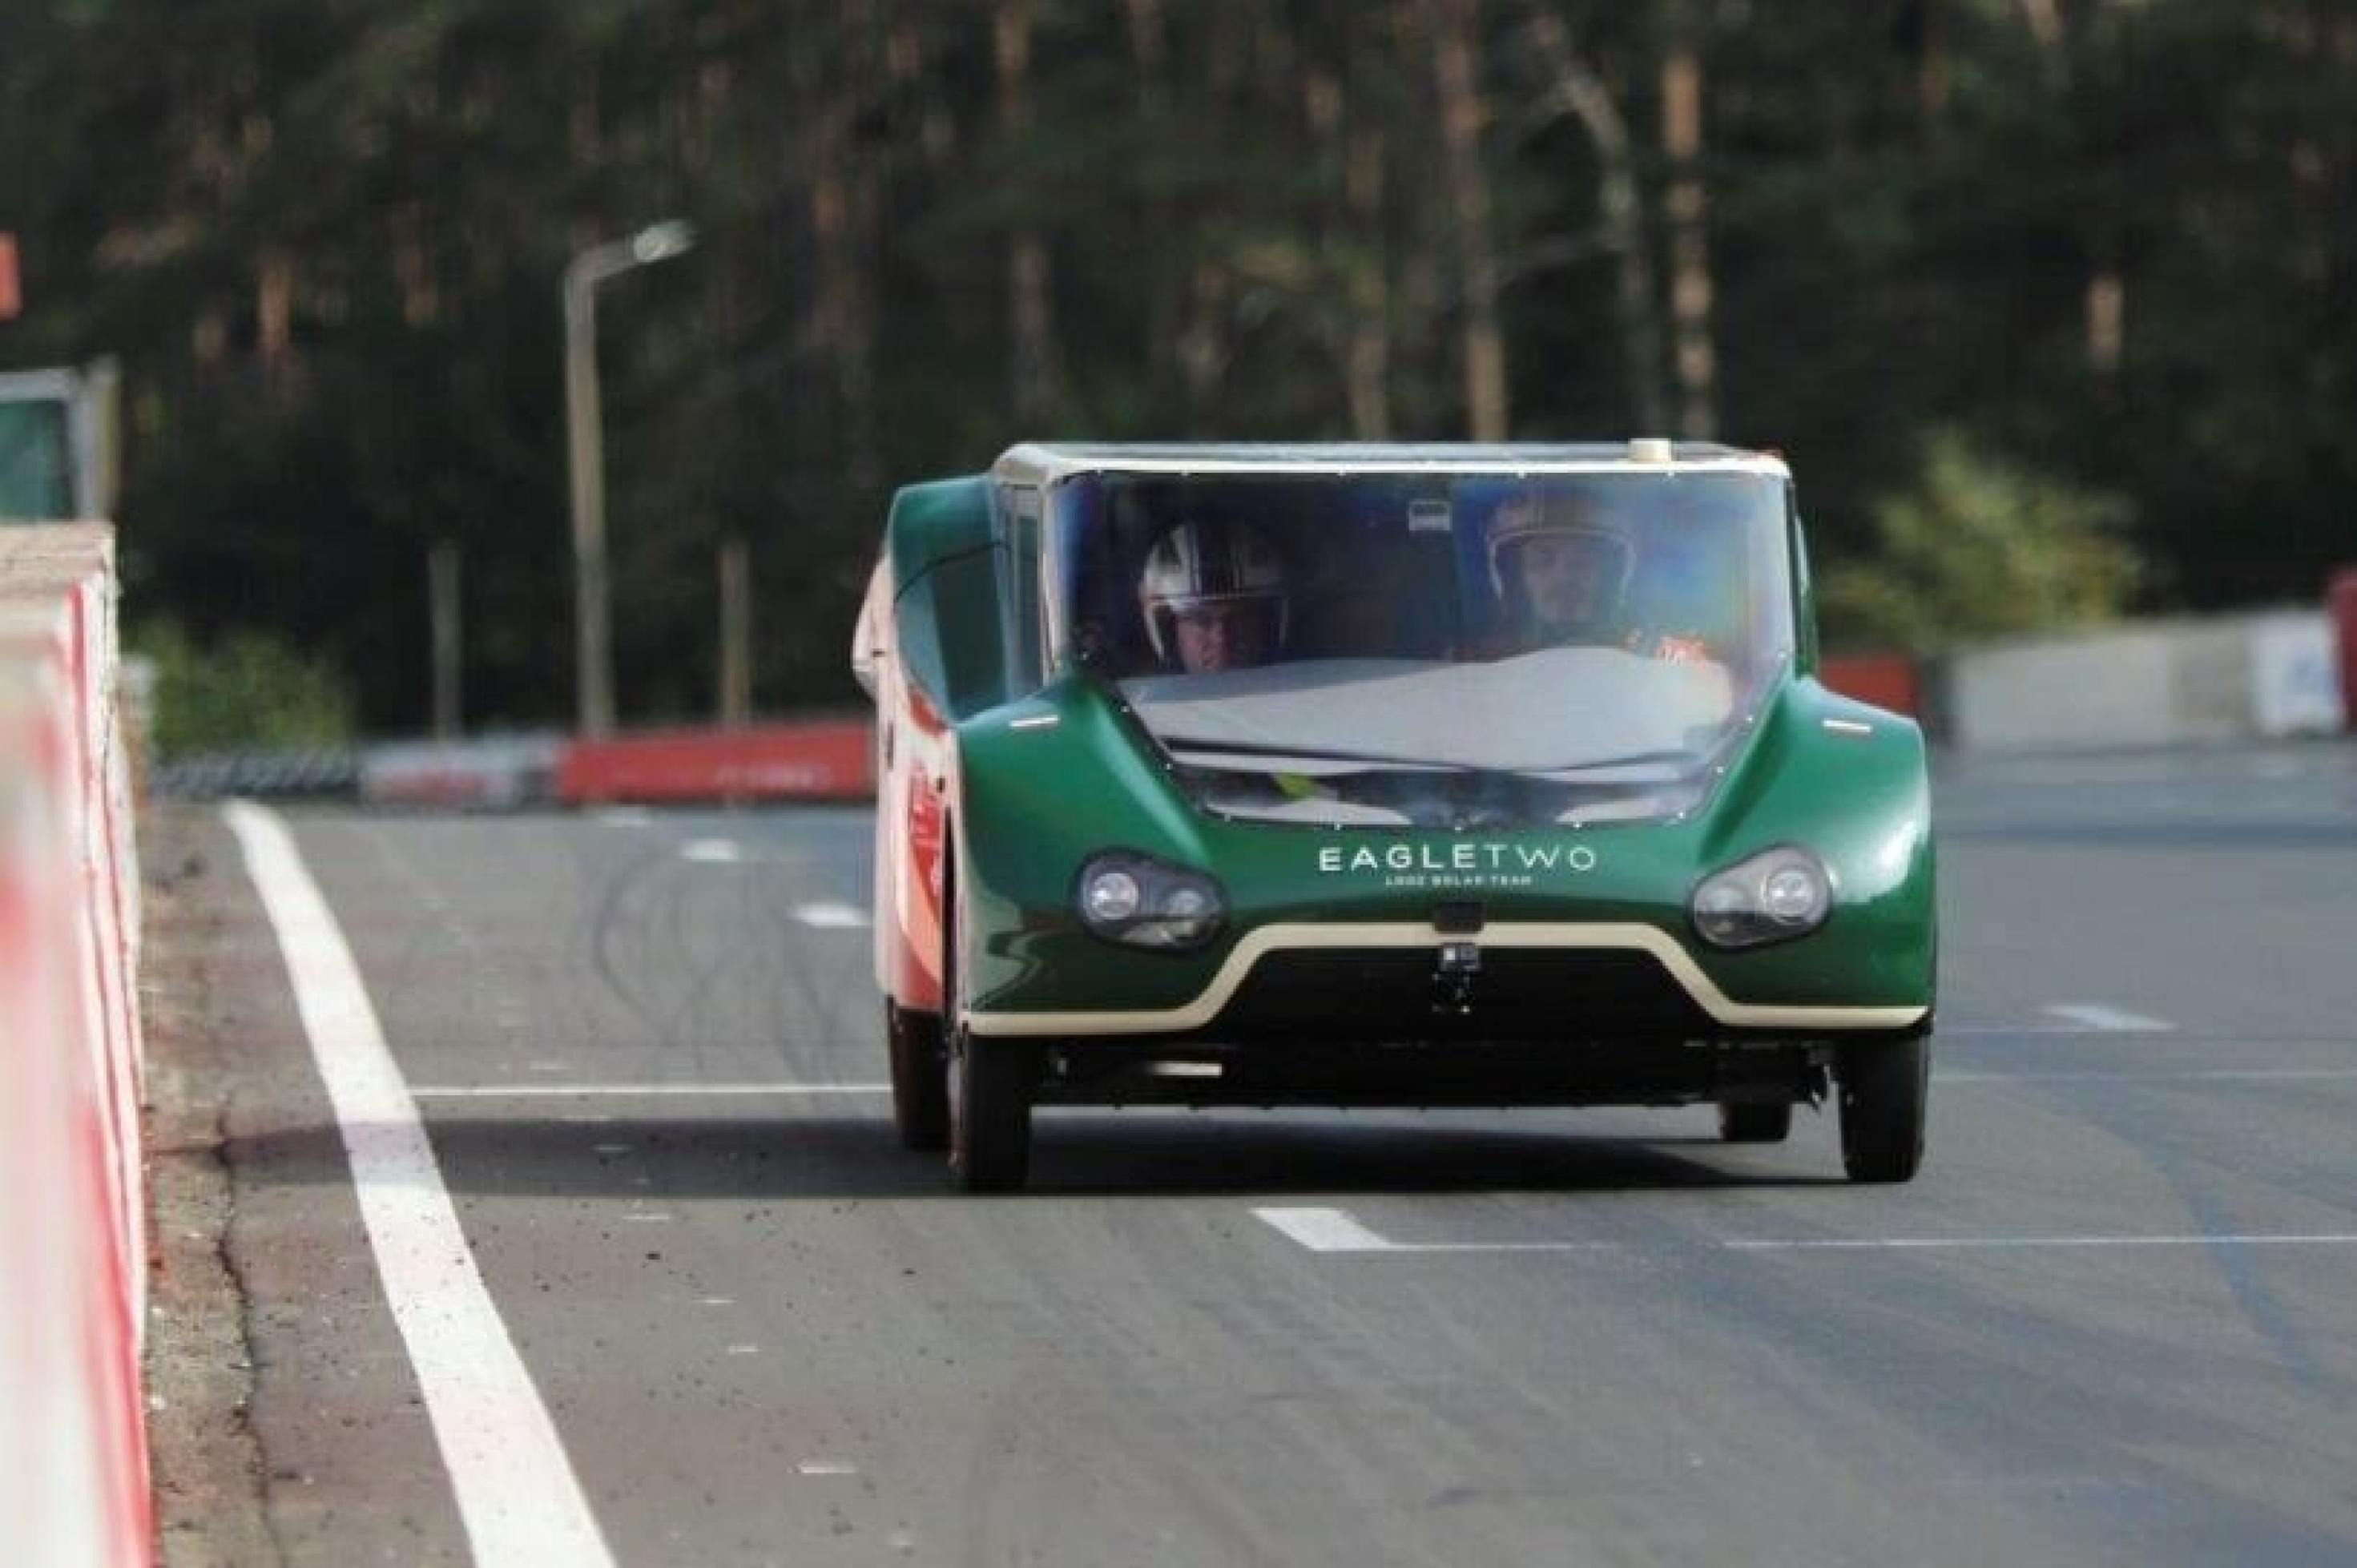 Das grüne Auto hat ein ungewöhnliches Design, ähnelt aber einem normalen Pkw. Dabei wird Eagle 2 von Solarzellen angetrieben.